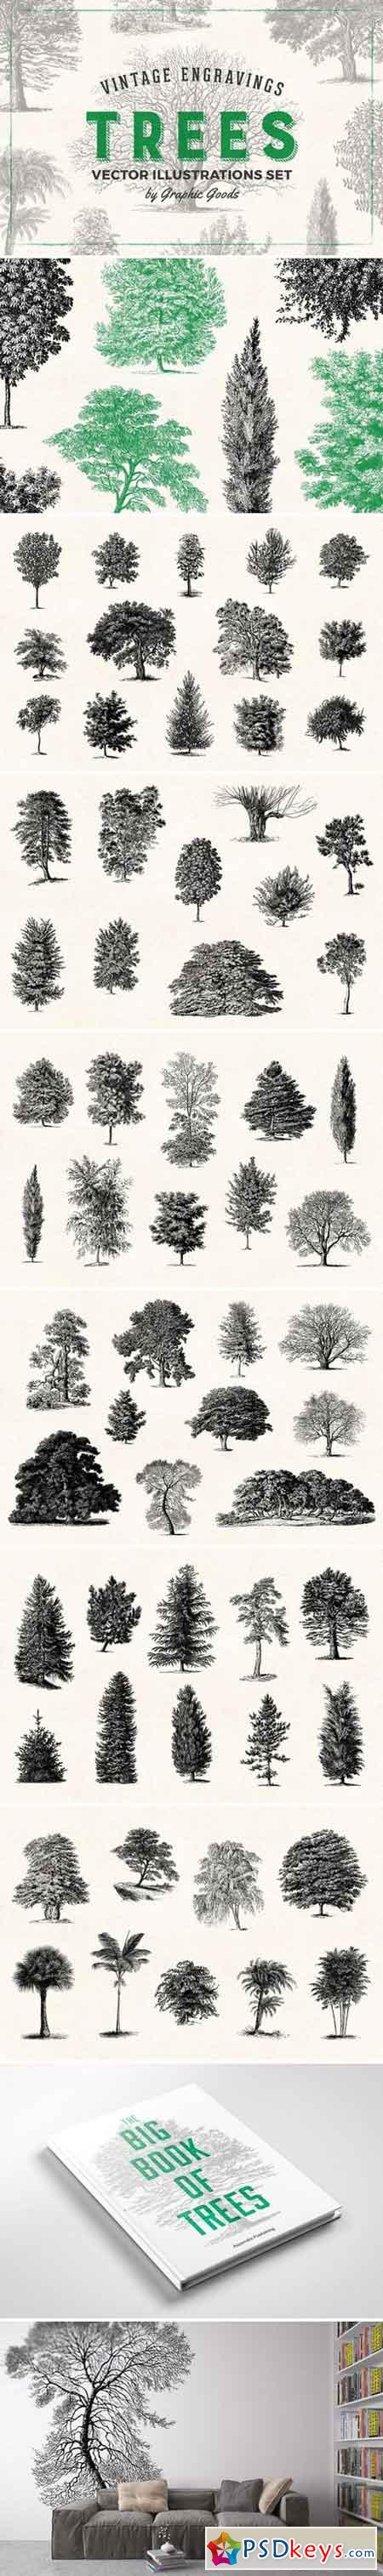 Trees - Vintage Illustrations Set 1566833